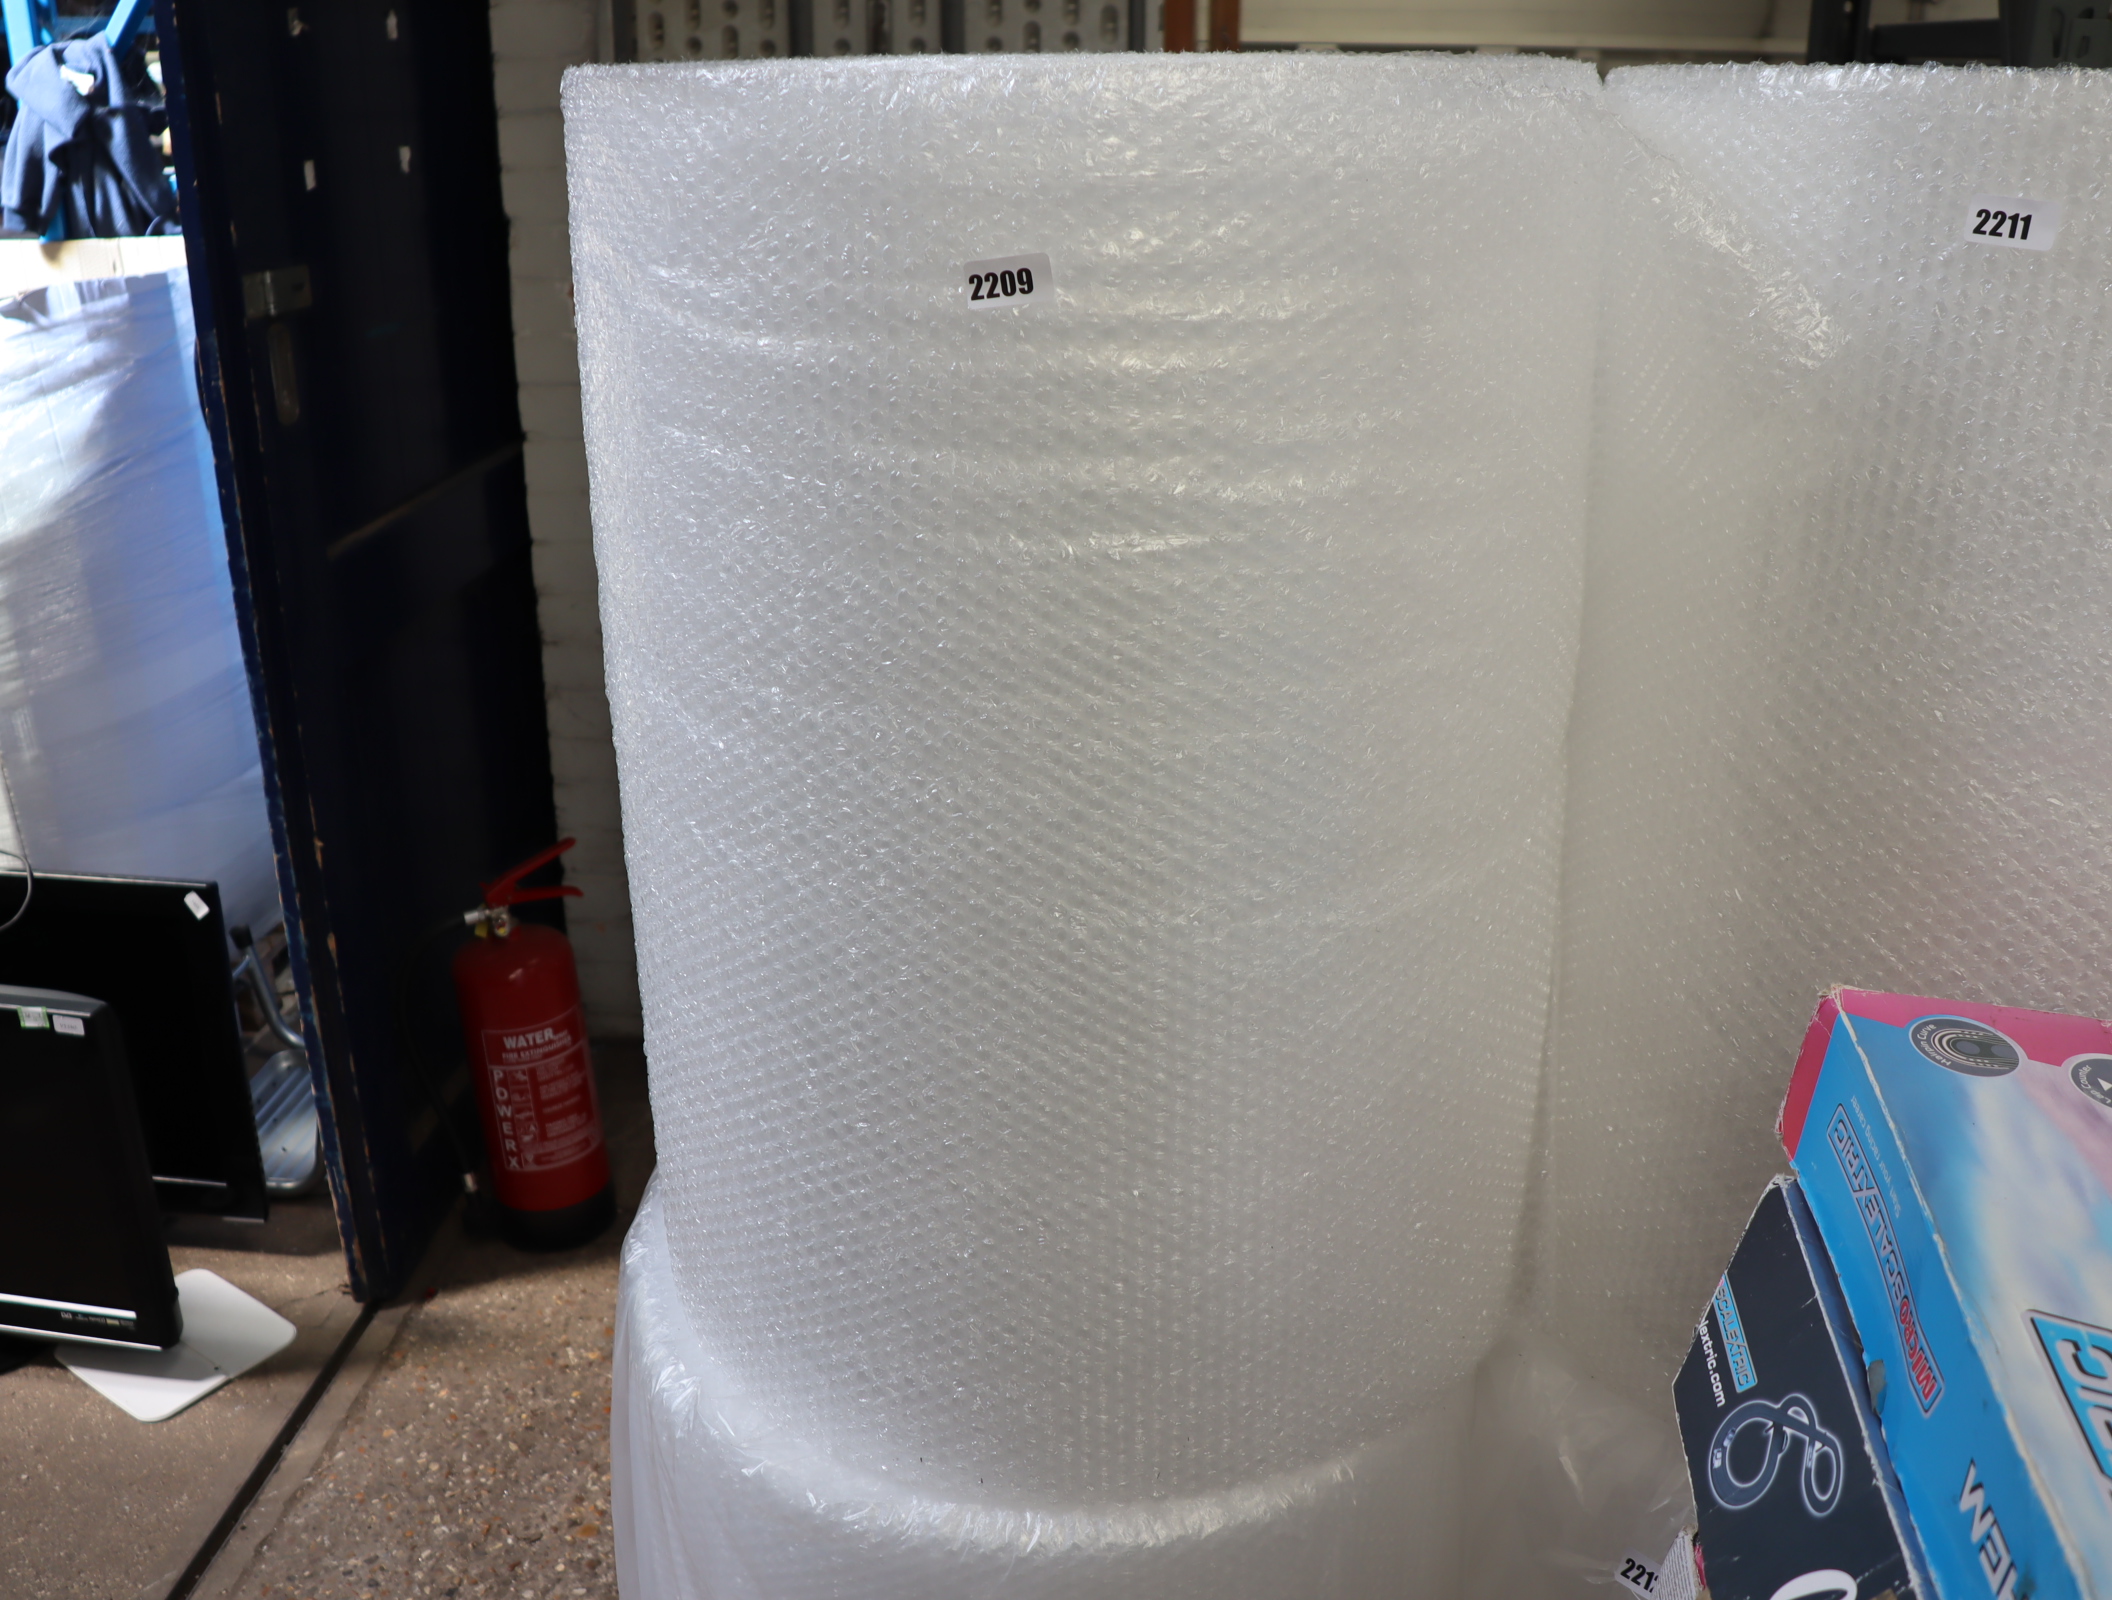 Large roll of bubblewrap